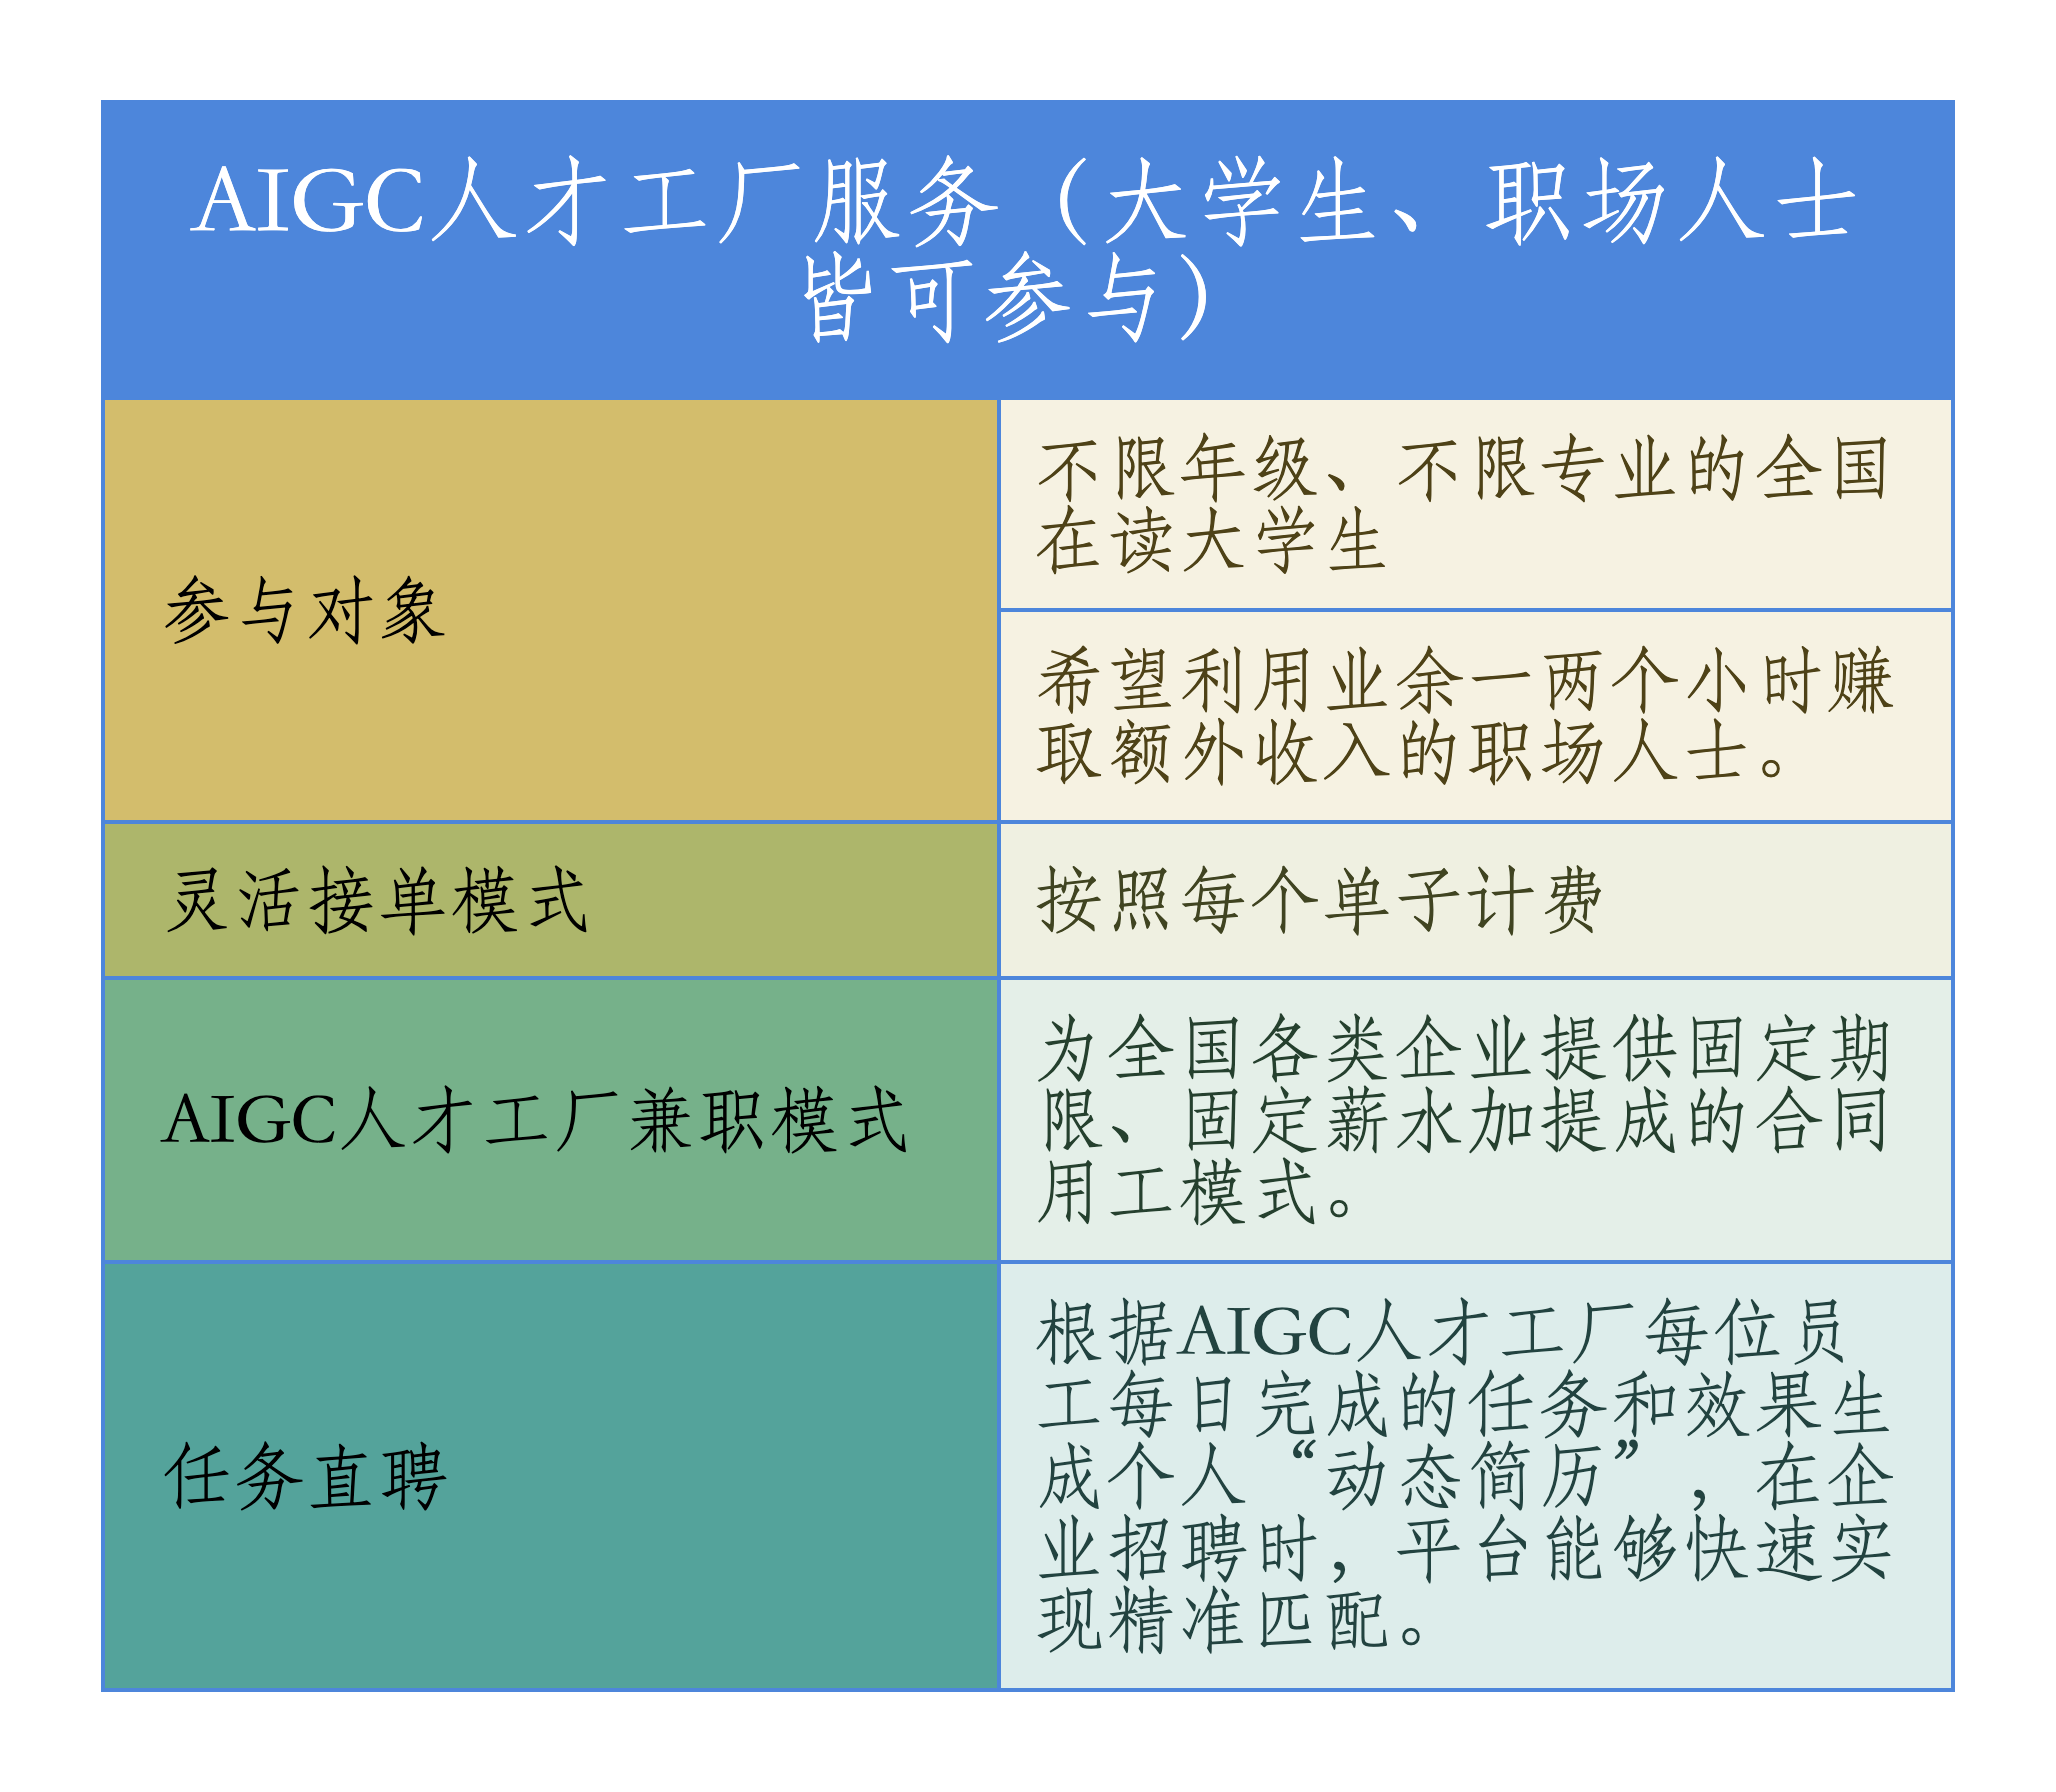 AIGC人才工厂服务（大学生、职场人士皆可参与）.png